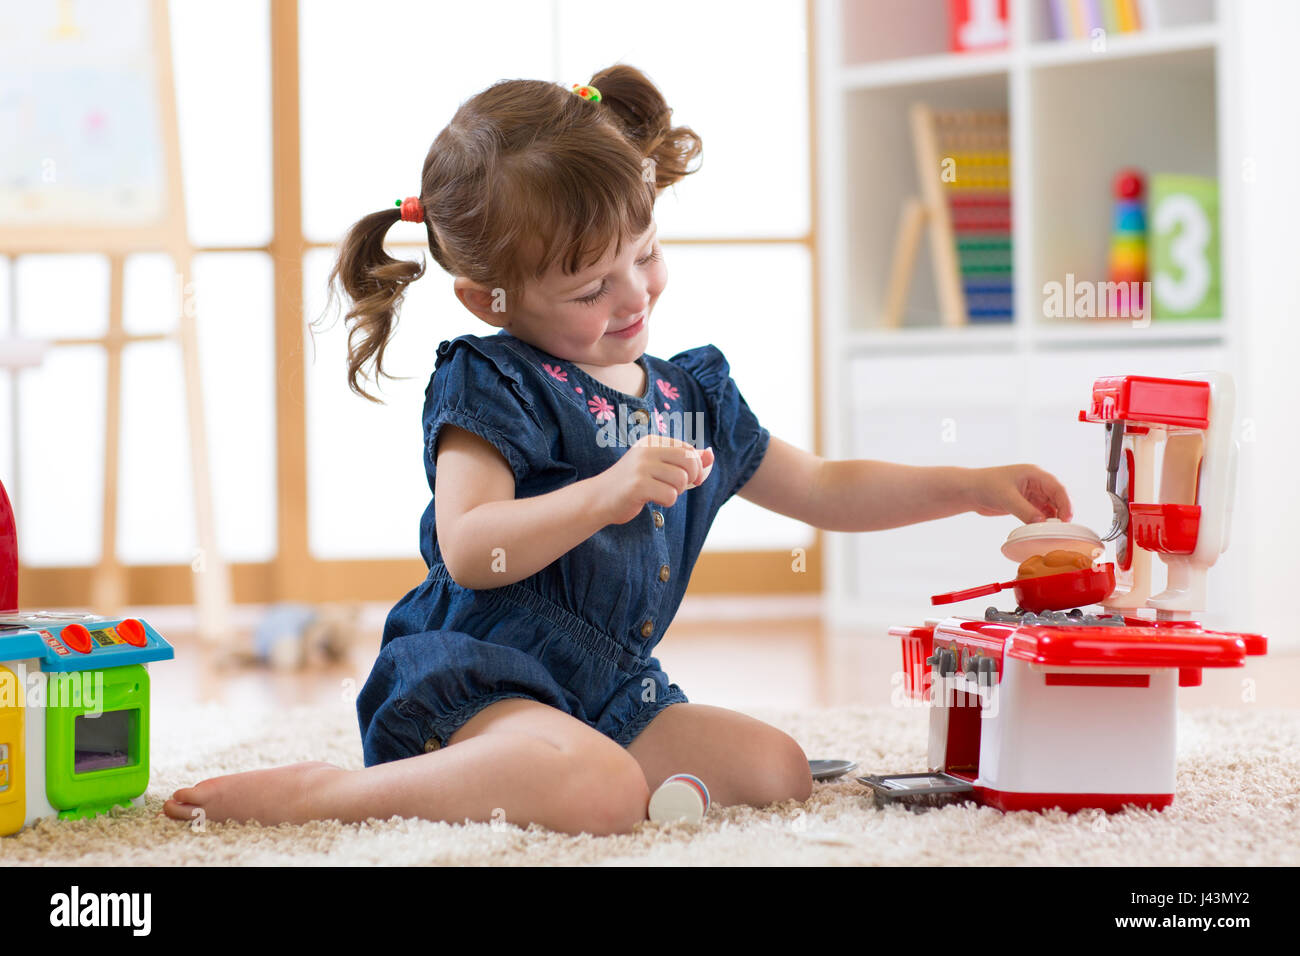 Kleine süße Mädchen spielen mit Spielzeug Utensil. Kleinkind Kind in ein Spielzimmer. Kind am Boden und in Spielzeug-Küche kochen. Stockfoto